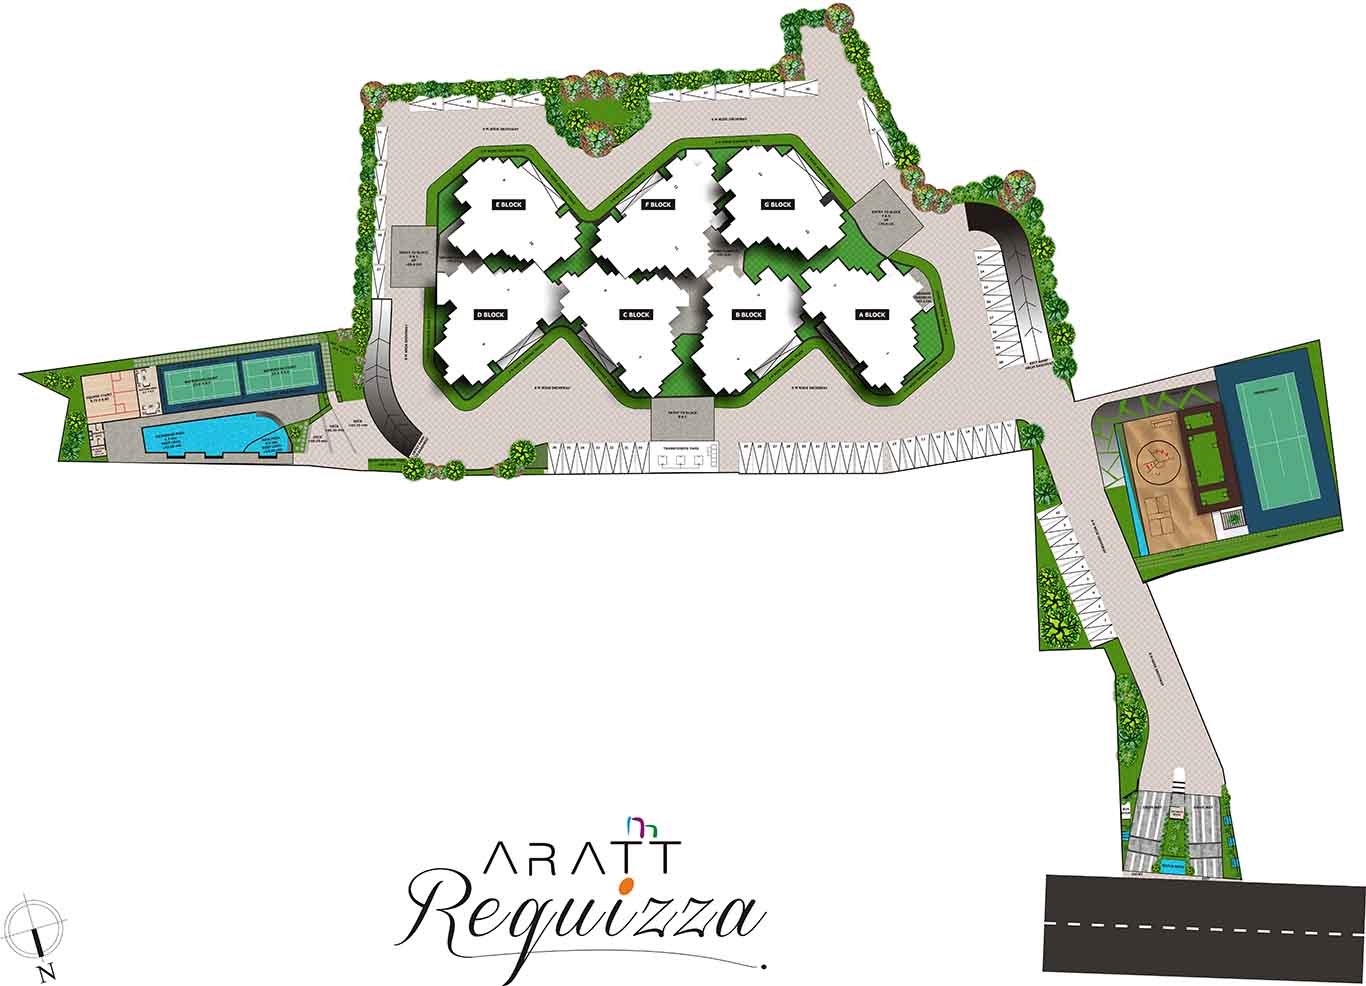 Aratt Requizza Master Plan